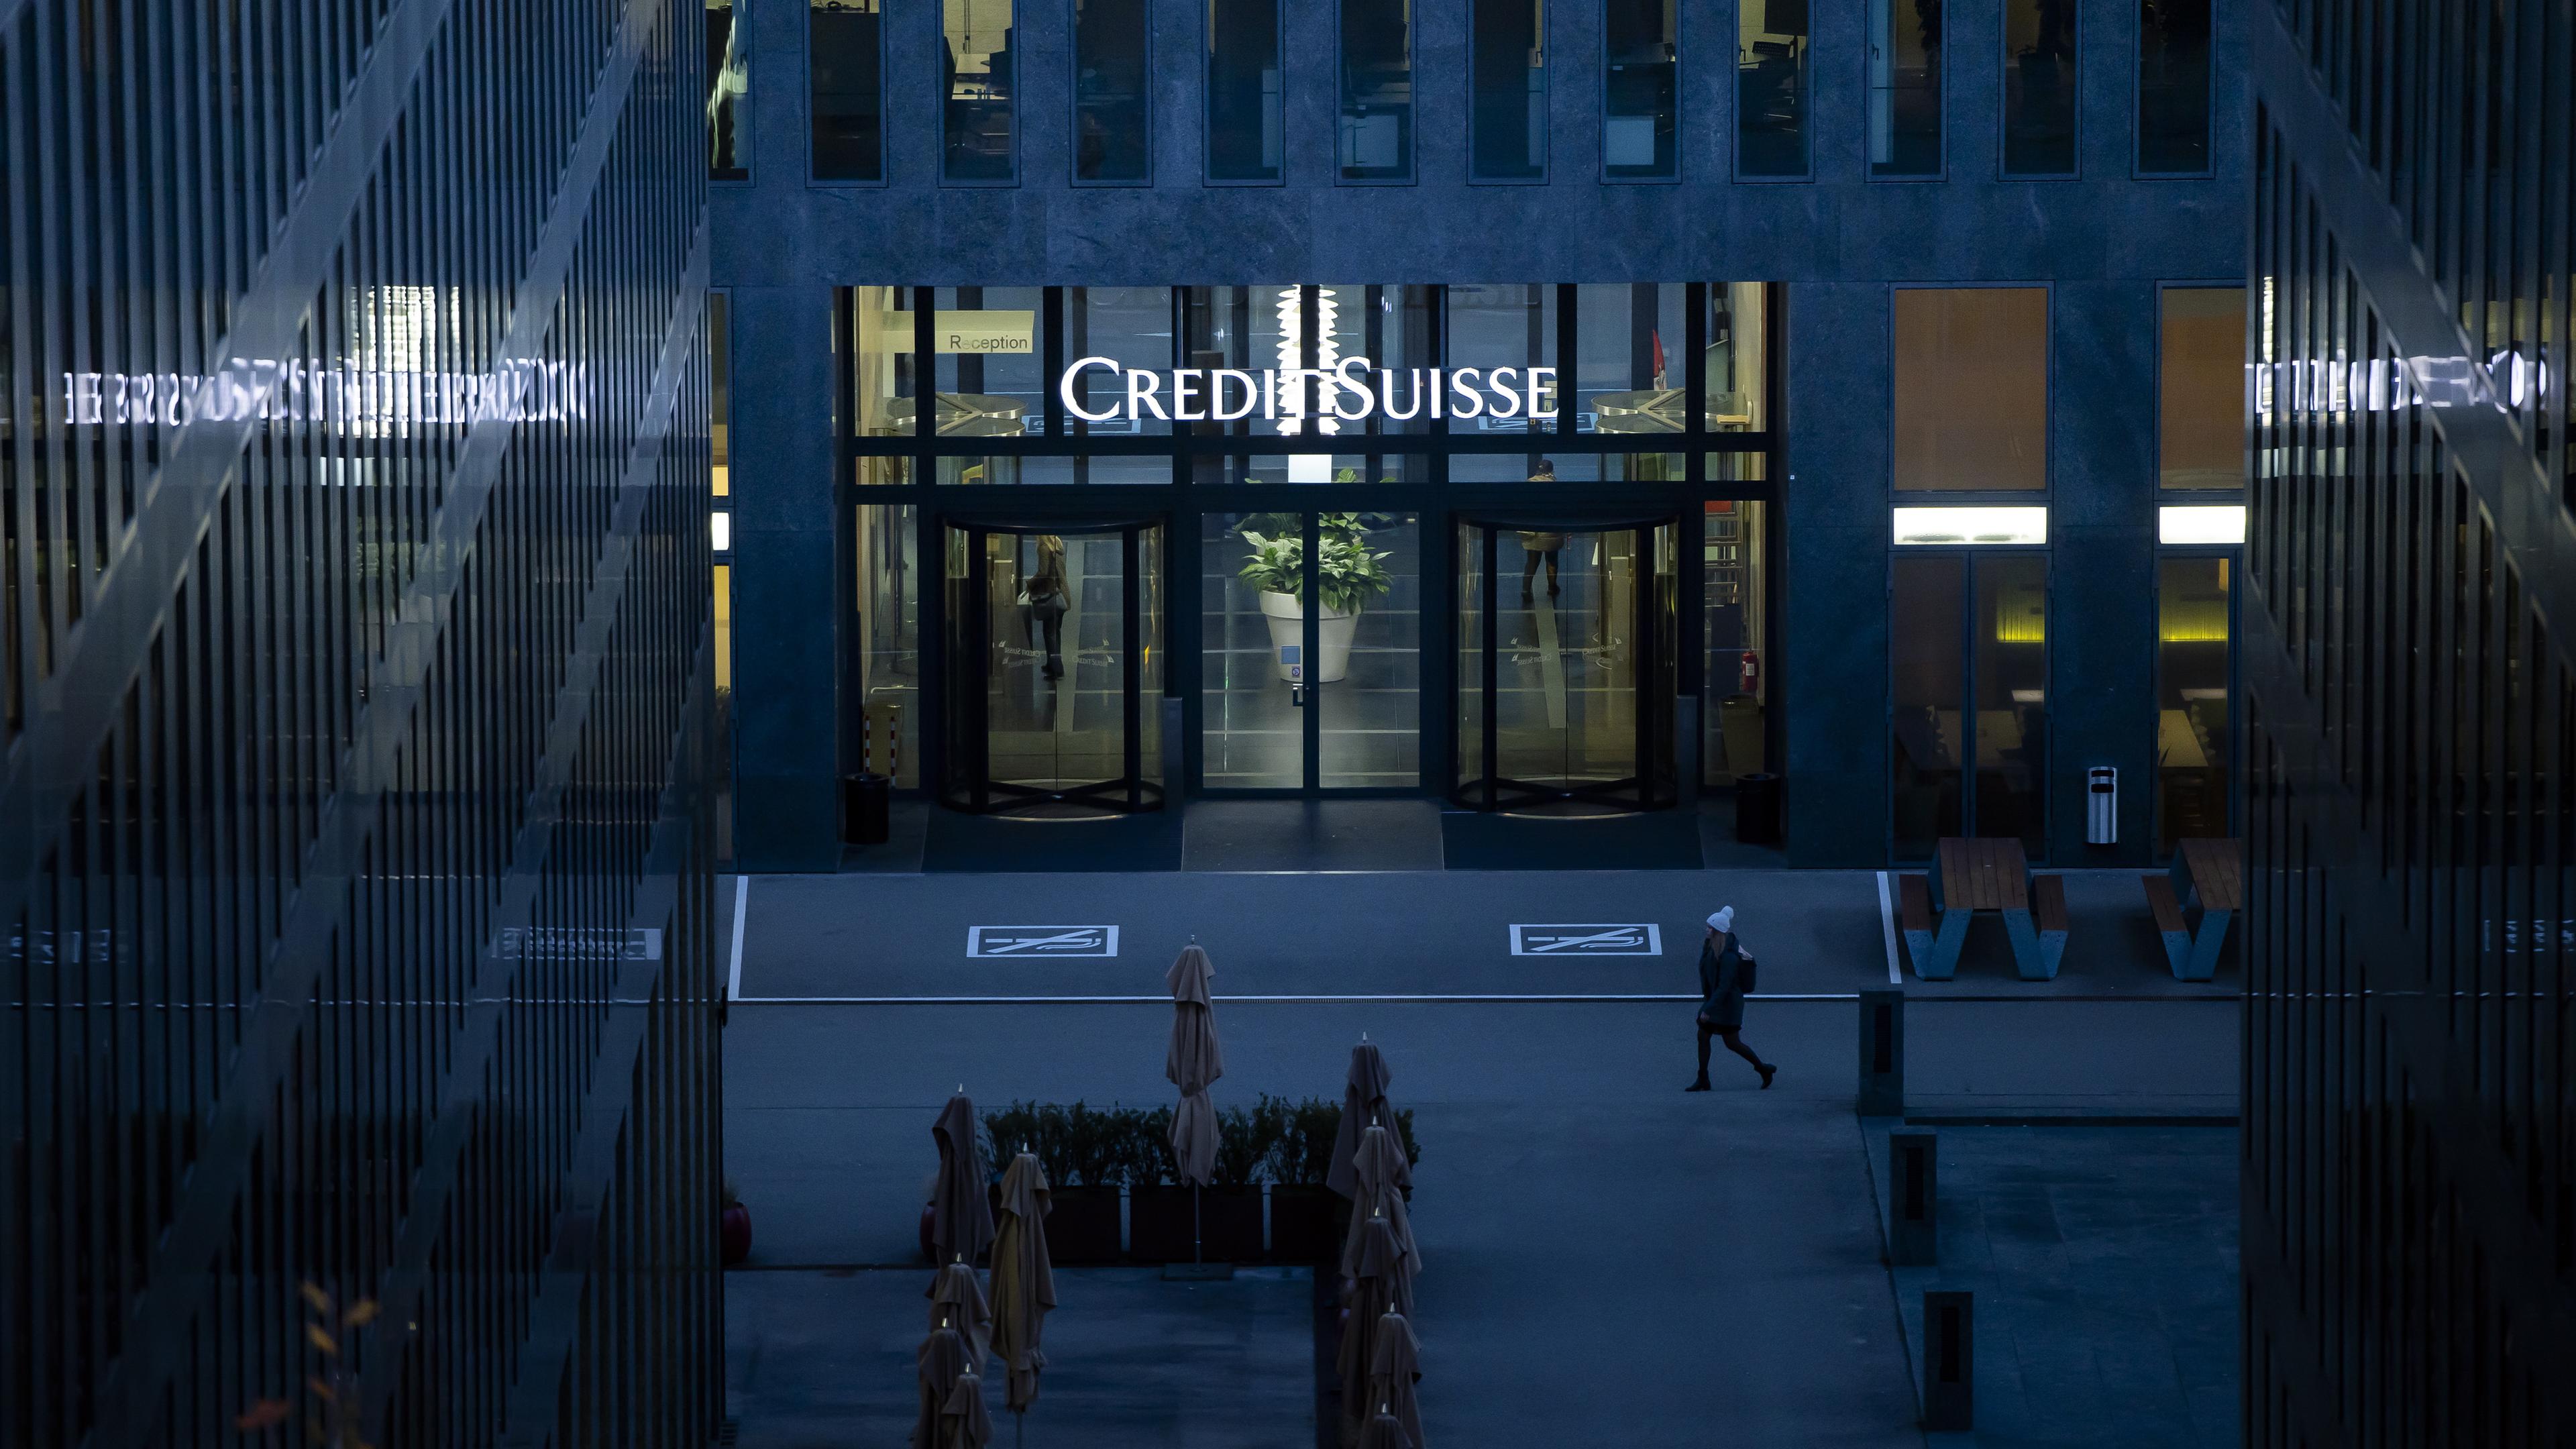 Die Fassade der Credit suiss Bank in Zürich.